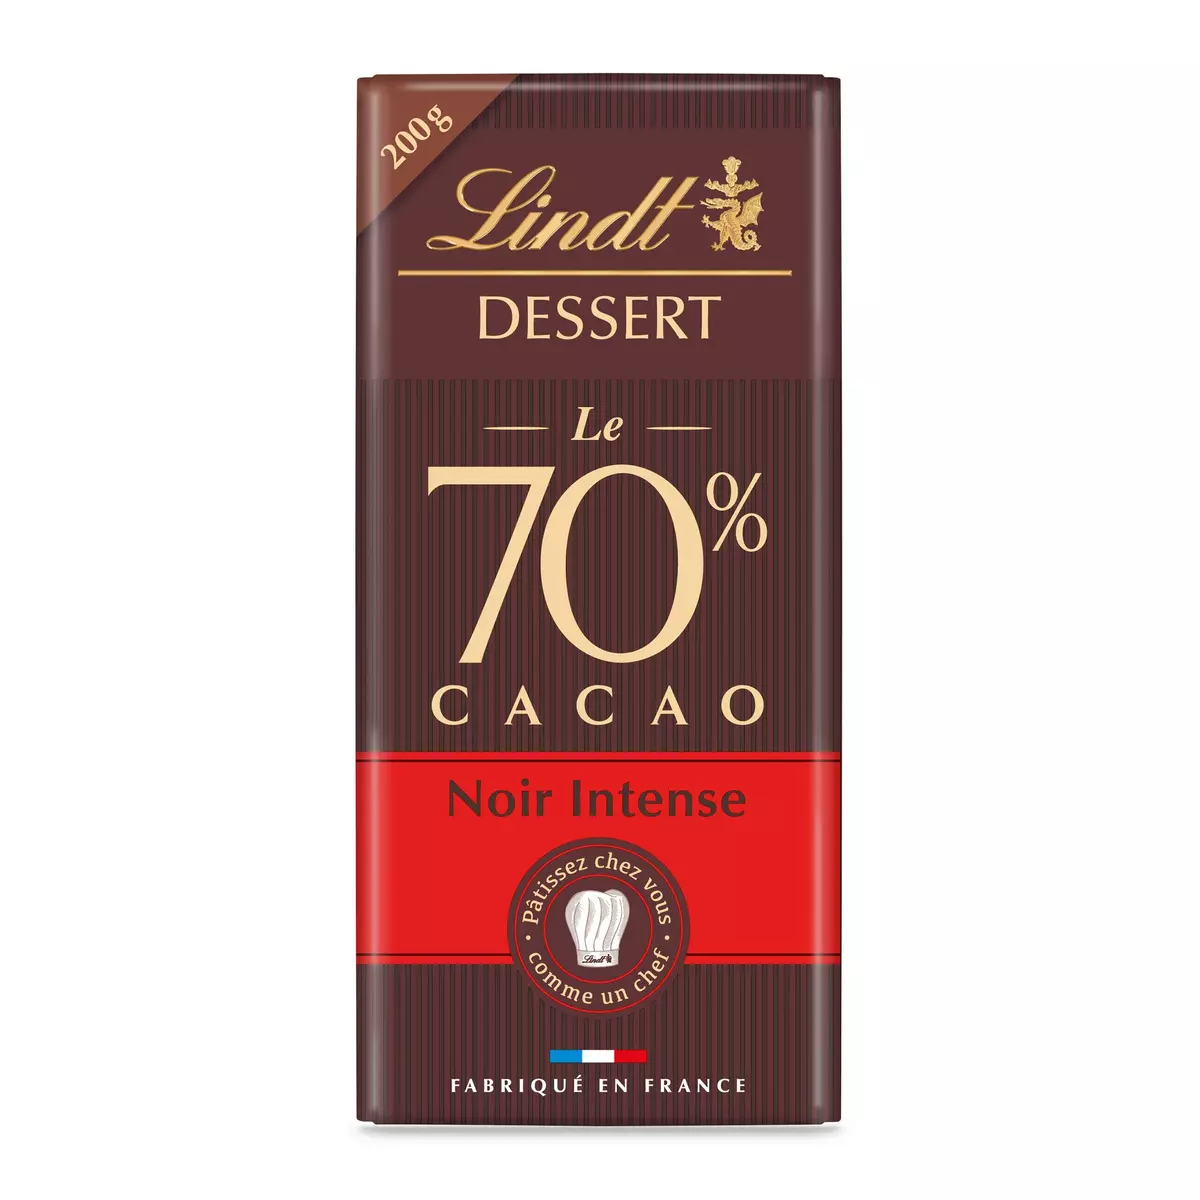 LINDT Dessert tablette de chocolat noir intense 70% cacao 1 pièce 200g